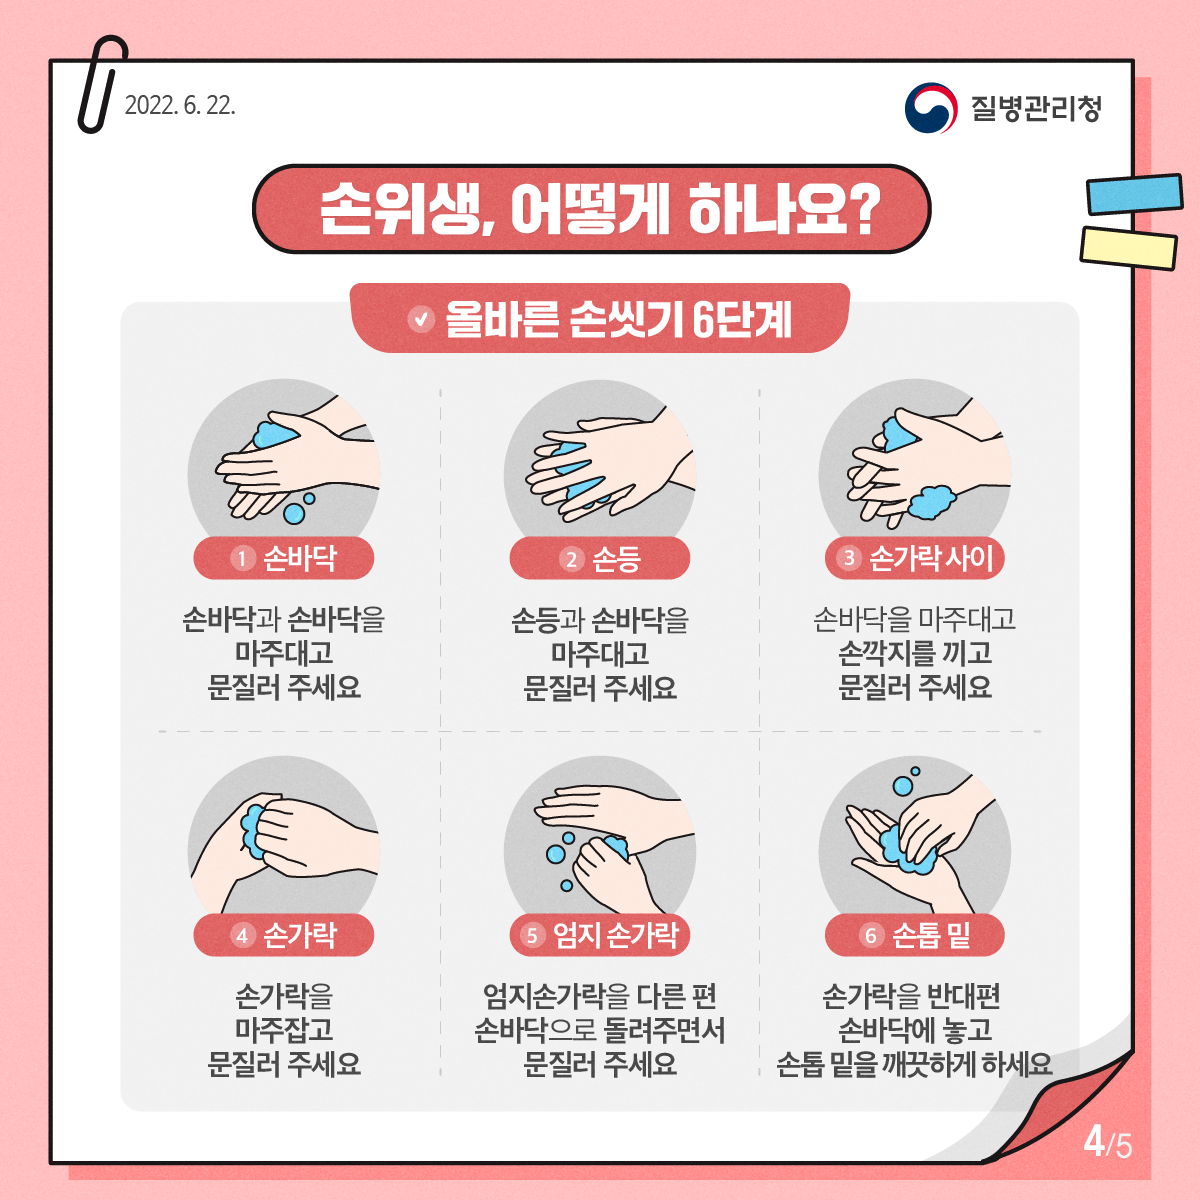 4.올바른 손씻기 6단계
올바른 손씻기 6단계:1.손바닥(손바닥과 손바닥을 마주대고 문질러 주세요), 2.손등(손등과 손바닥을 마주대고 문질러 주세요), 3. 손가락사이(손바닥을 마주대고 손깍지를 끼고 문질러 주세요), 4.손가락(손가락을 마주잡고 문질러 주세요.5. 엄지손가락(엄지손가락을 반대편 손바닥으로 돌려주면서 문질러 주세요. 6.손톱 밑(손가락을 반대편손바닥에 놓고 손톱 밑을 깨끗하게 하세요. 사진3